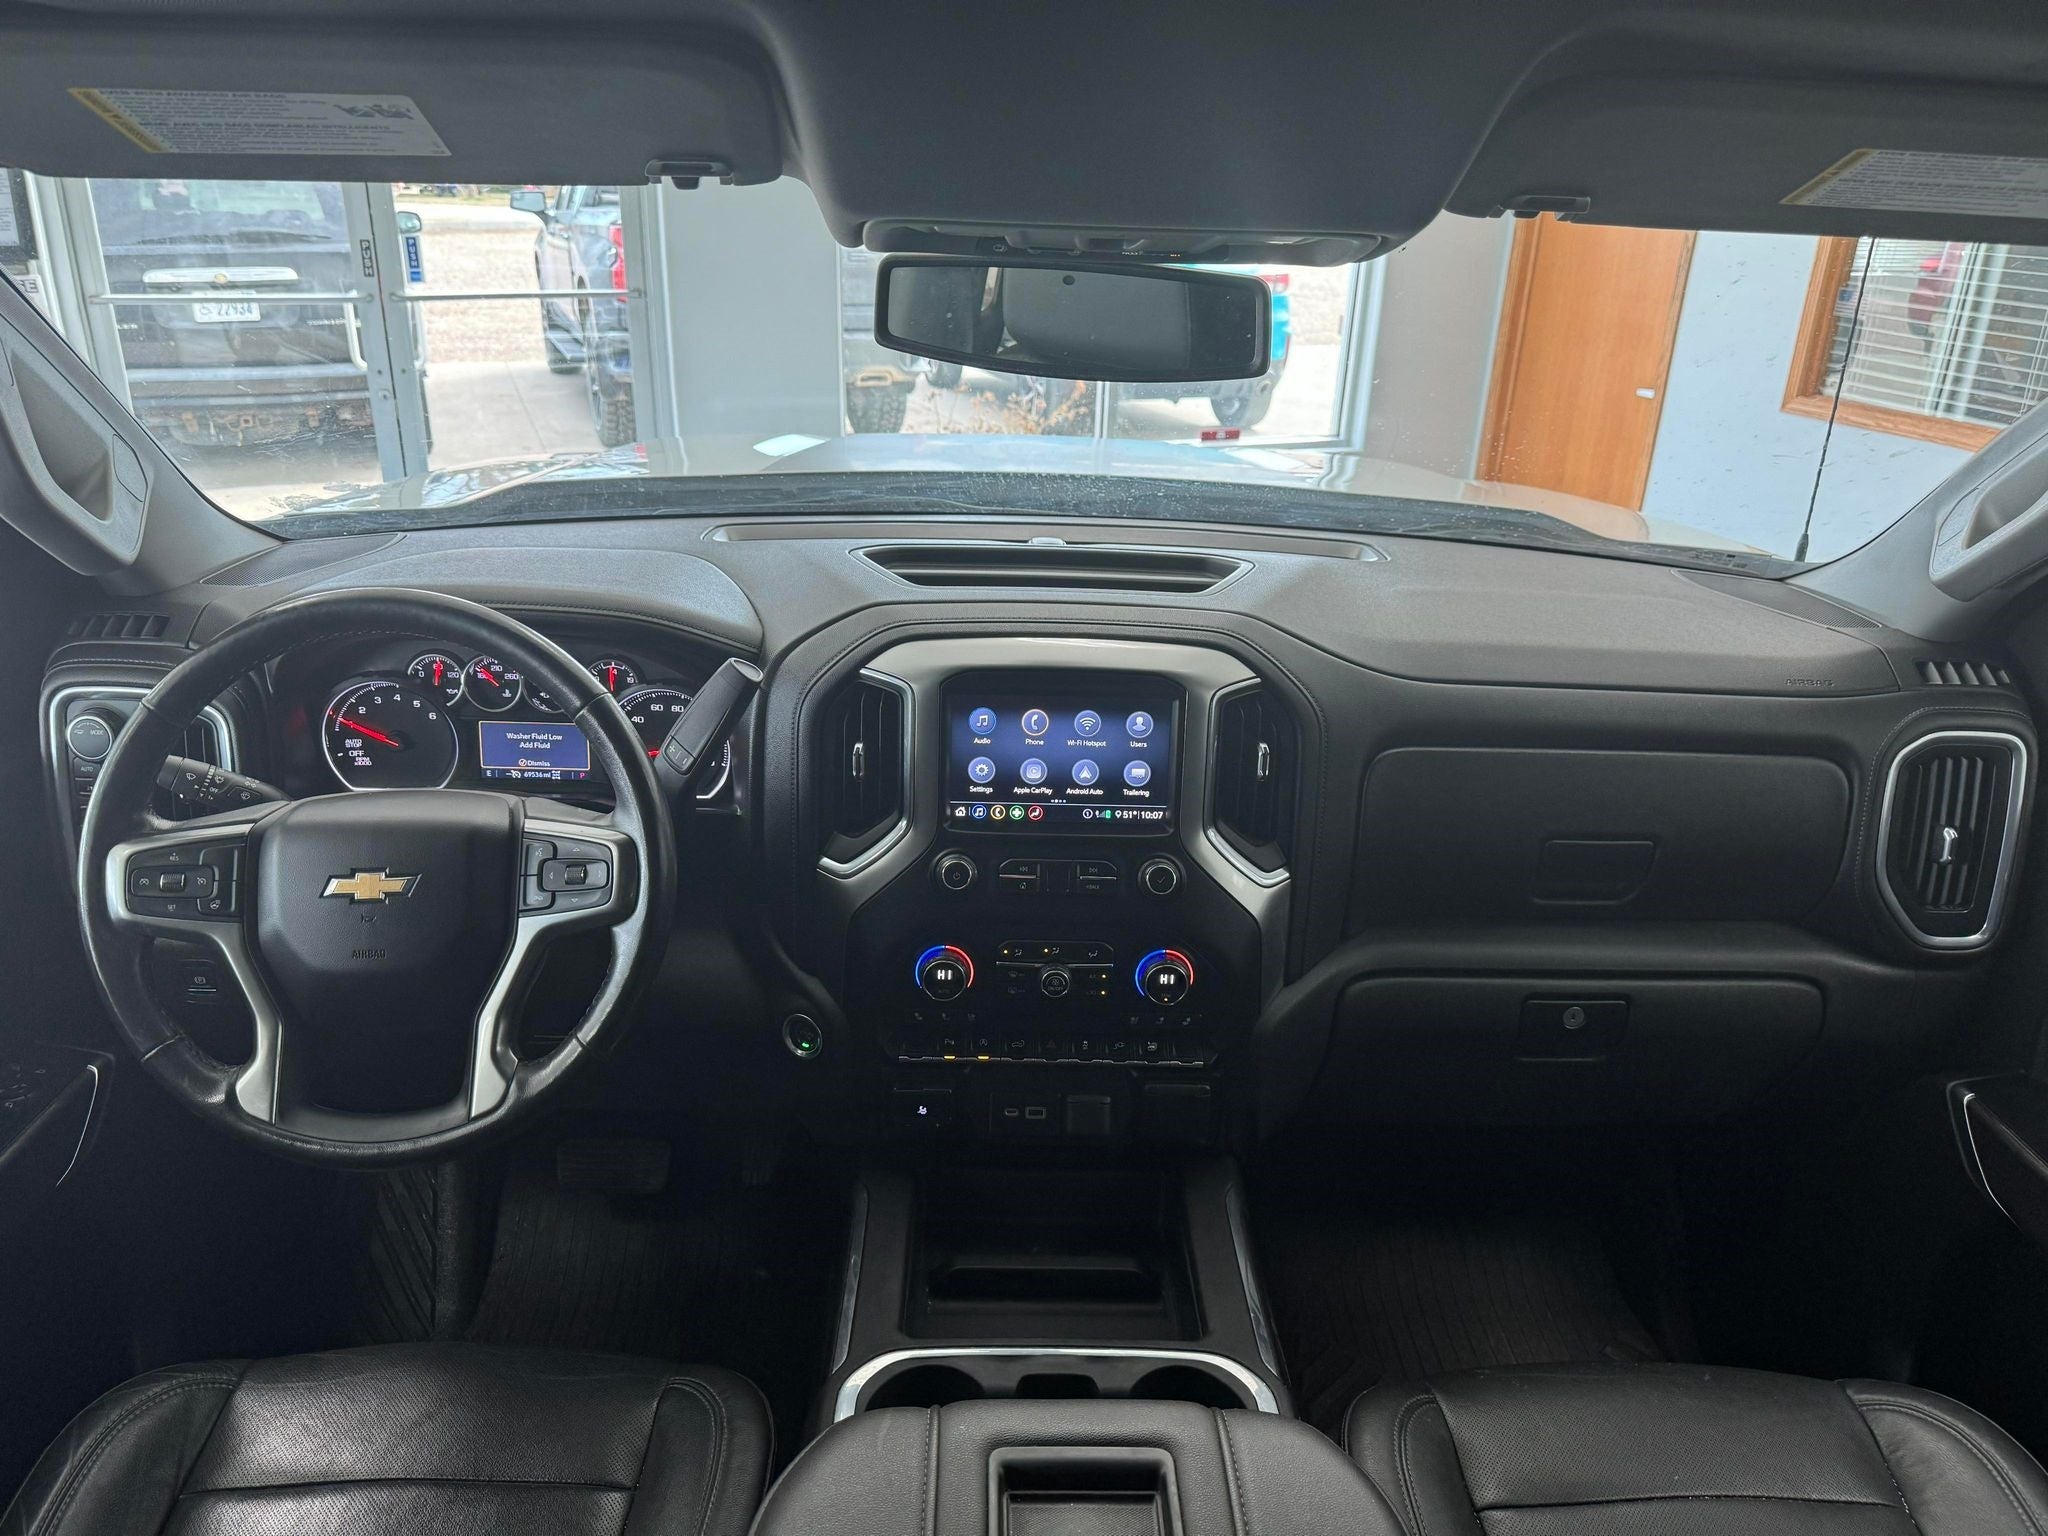 2020 Chevrolet Silverado 1500 LTZ